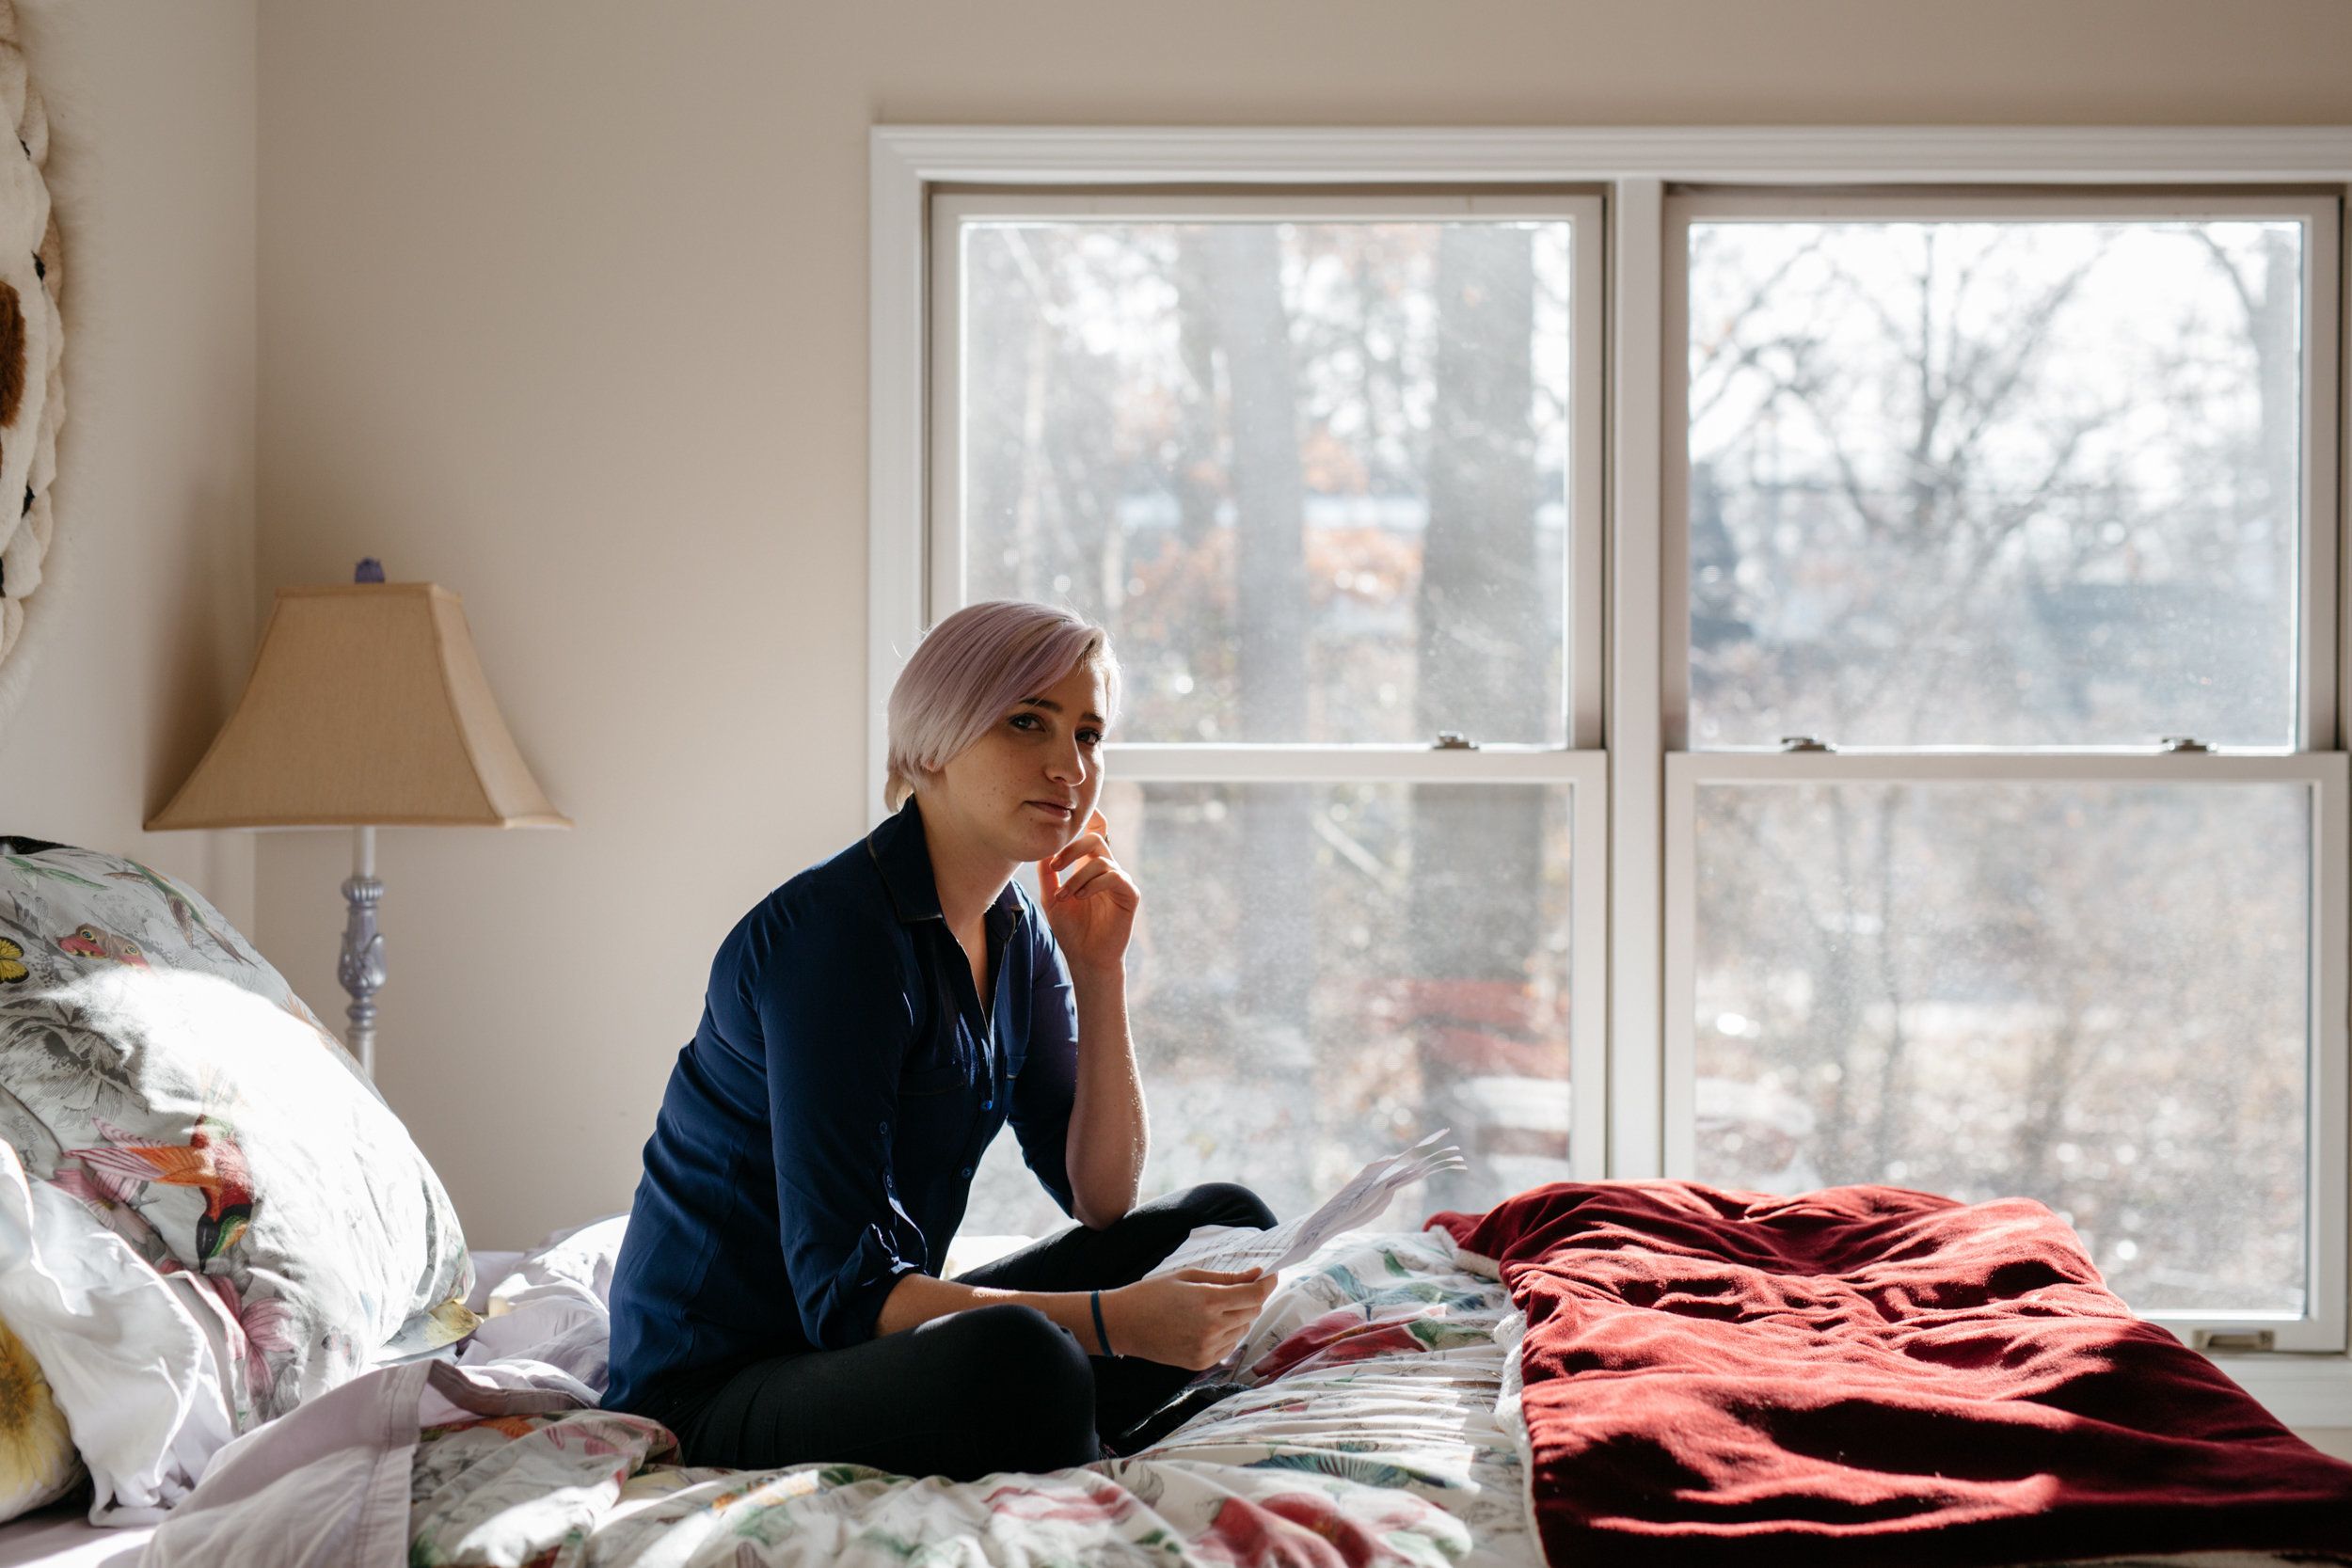  Amanda Thomashow, de 29 años, posa para un retrato en la cama donde escribió originalmente su declaración de impacto sobre Nassar hace un año 